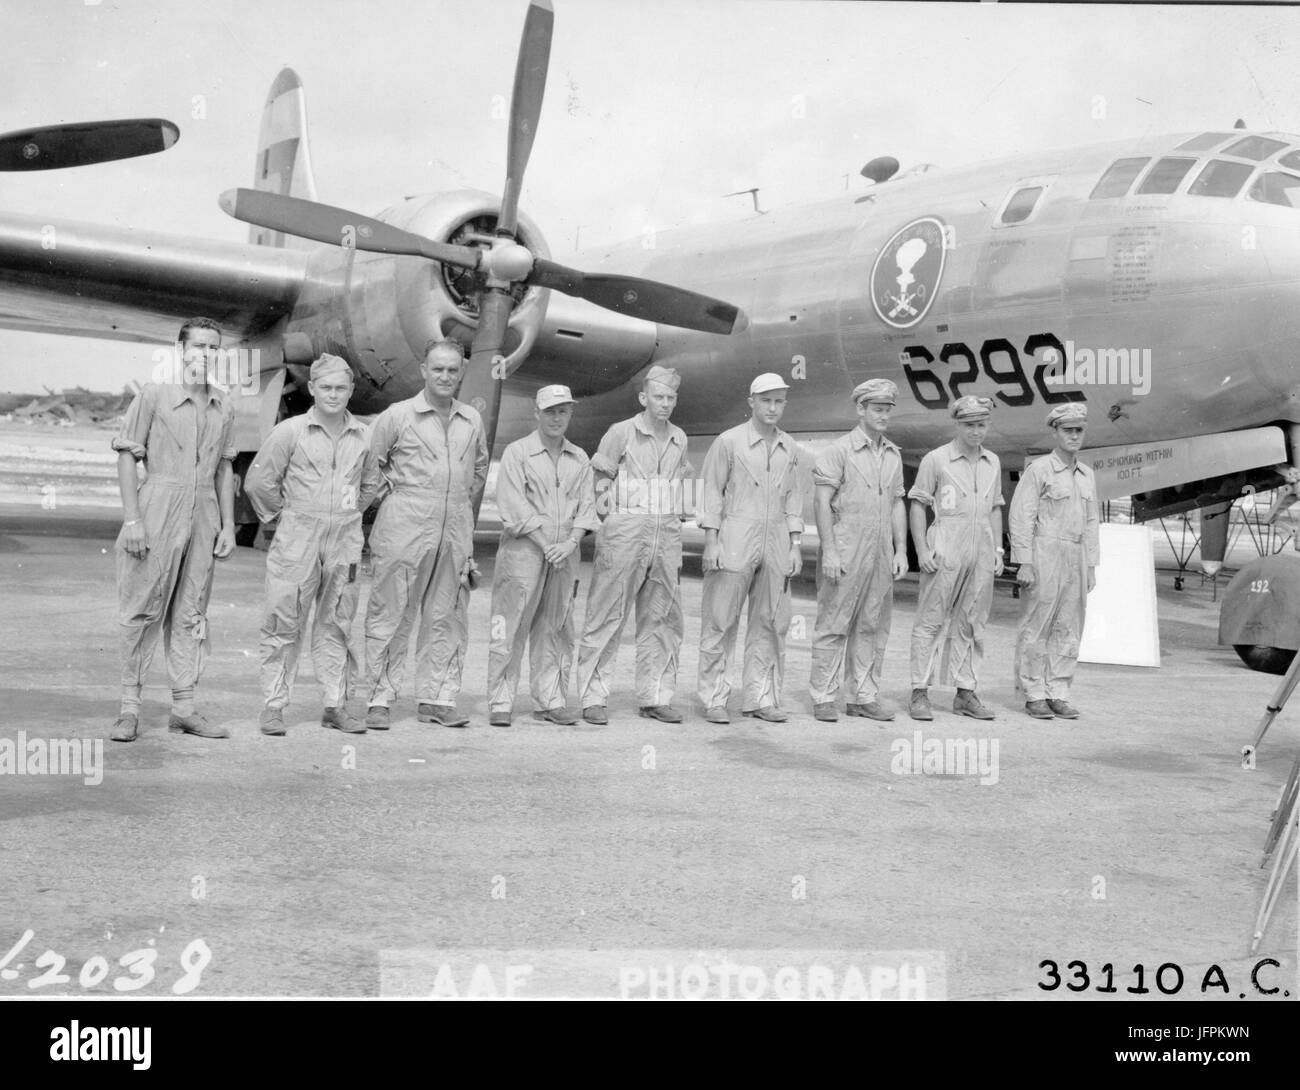 Die Crew der Boeing b-29 "ENOLA GAY", das Flugzeug, die Atombombe auf Hiroshima abgeworfen. Von links nach rechts sind: Sgt t.j. Healey; Sgt C.O Wentzell; S/Sgt s.e. Osmond; M/Sgt w.f. Orren; M/Sgt W. Duzenbury; Lt J. M. Anderson; Maj T. Ferrebee; Maj T. Van Kirk; und Col Paul W. Tibbets. Kwajalein, 13. Juni 1946. Stockfoto